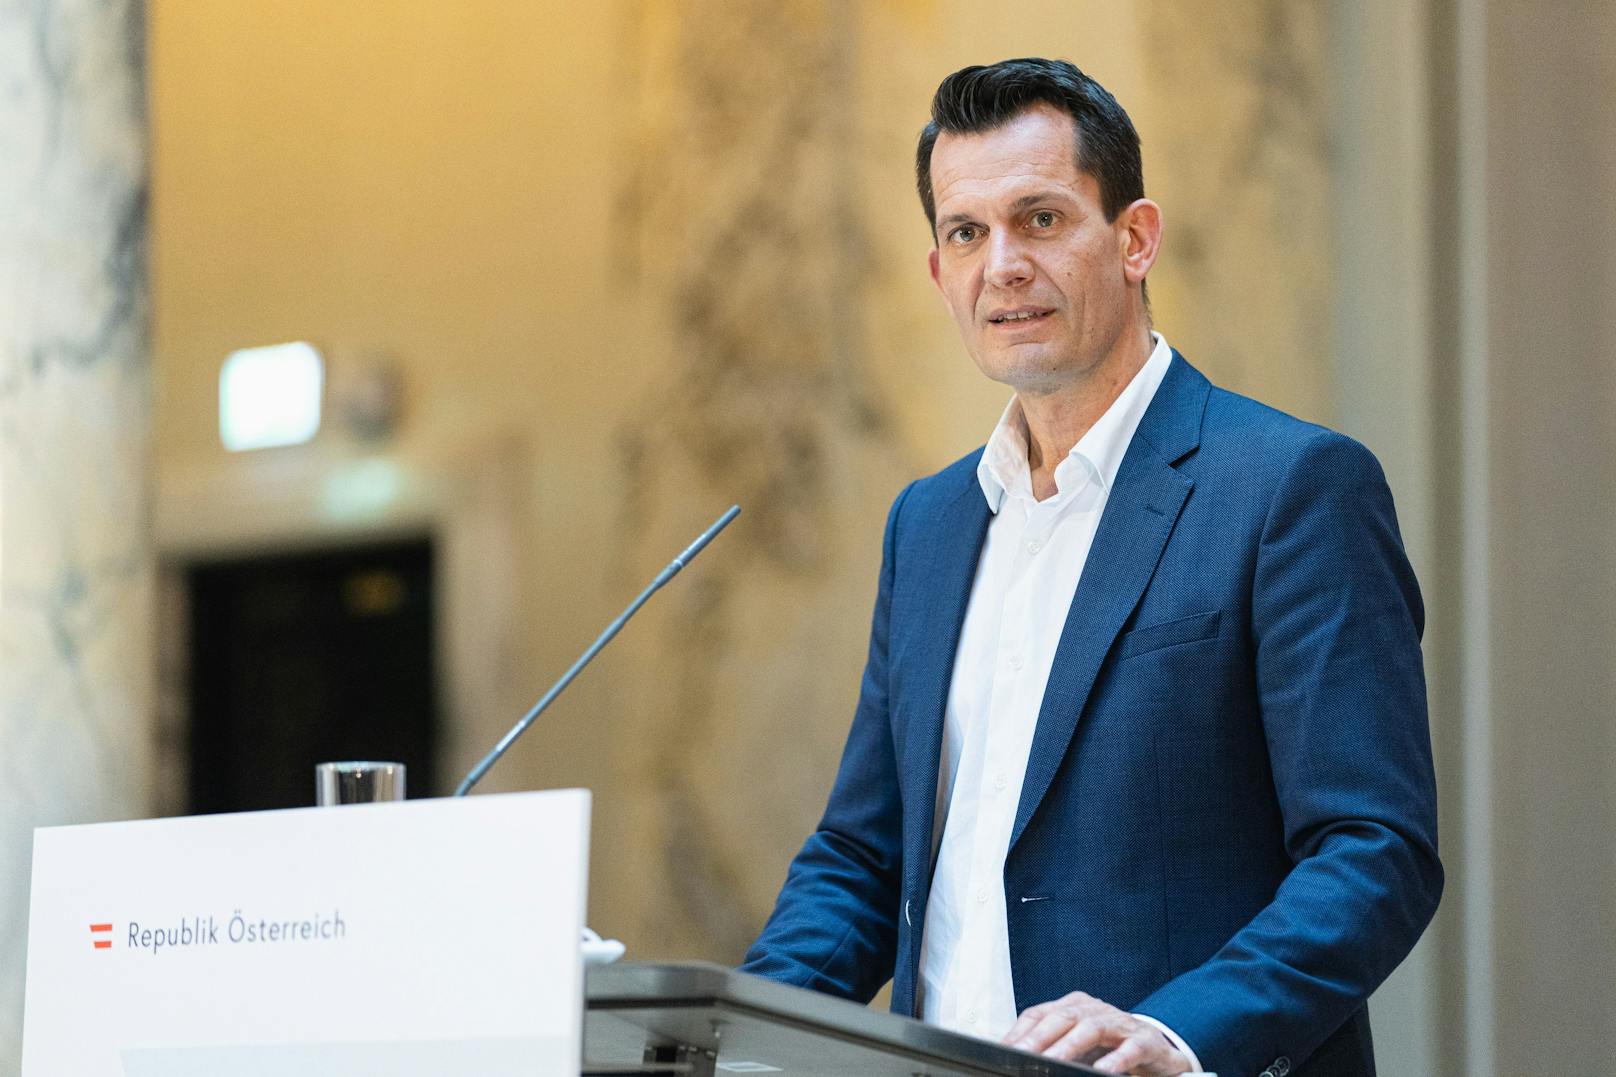 Der neue österreichische Gesundheitsminister ist in seiner ersten Woche im Amt bereits durch so einiges aufgefallen. Nun enthüllte er ein weiteres Detail über sich.